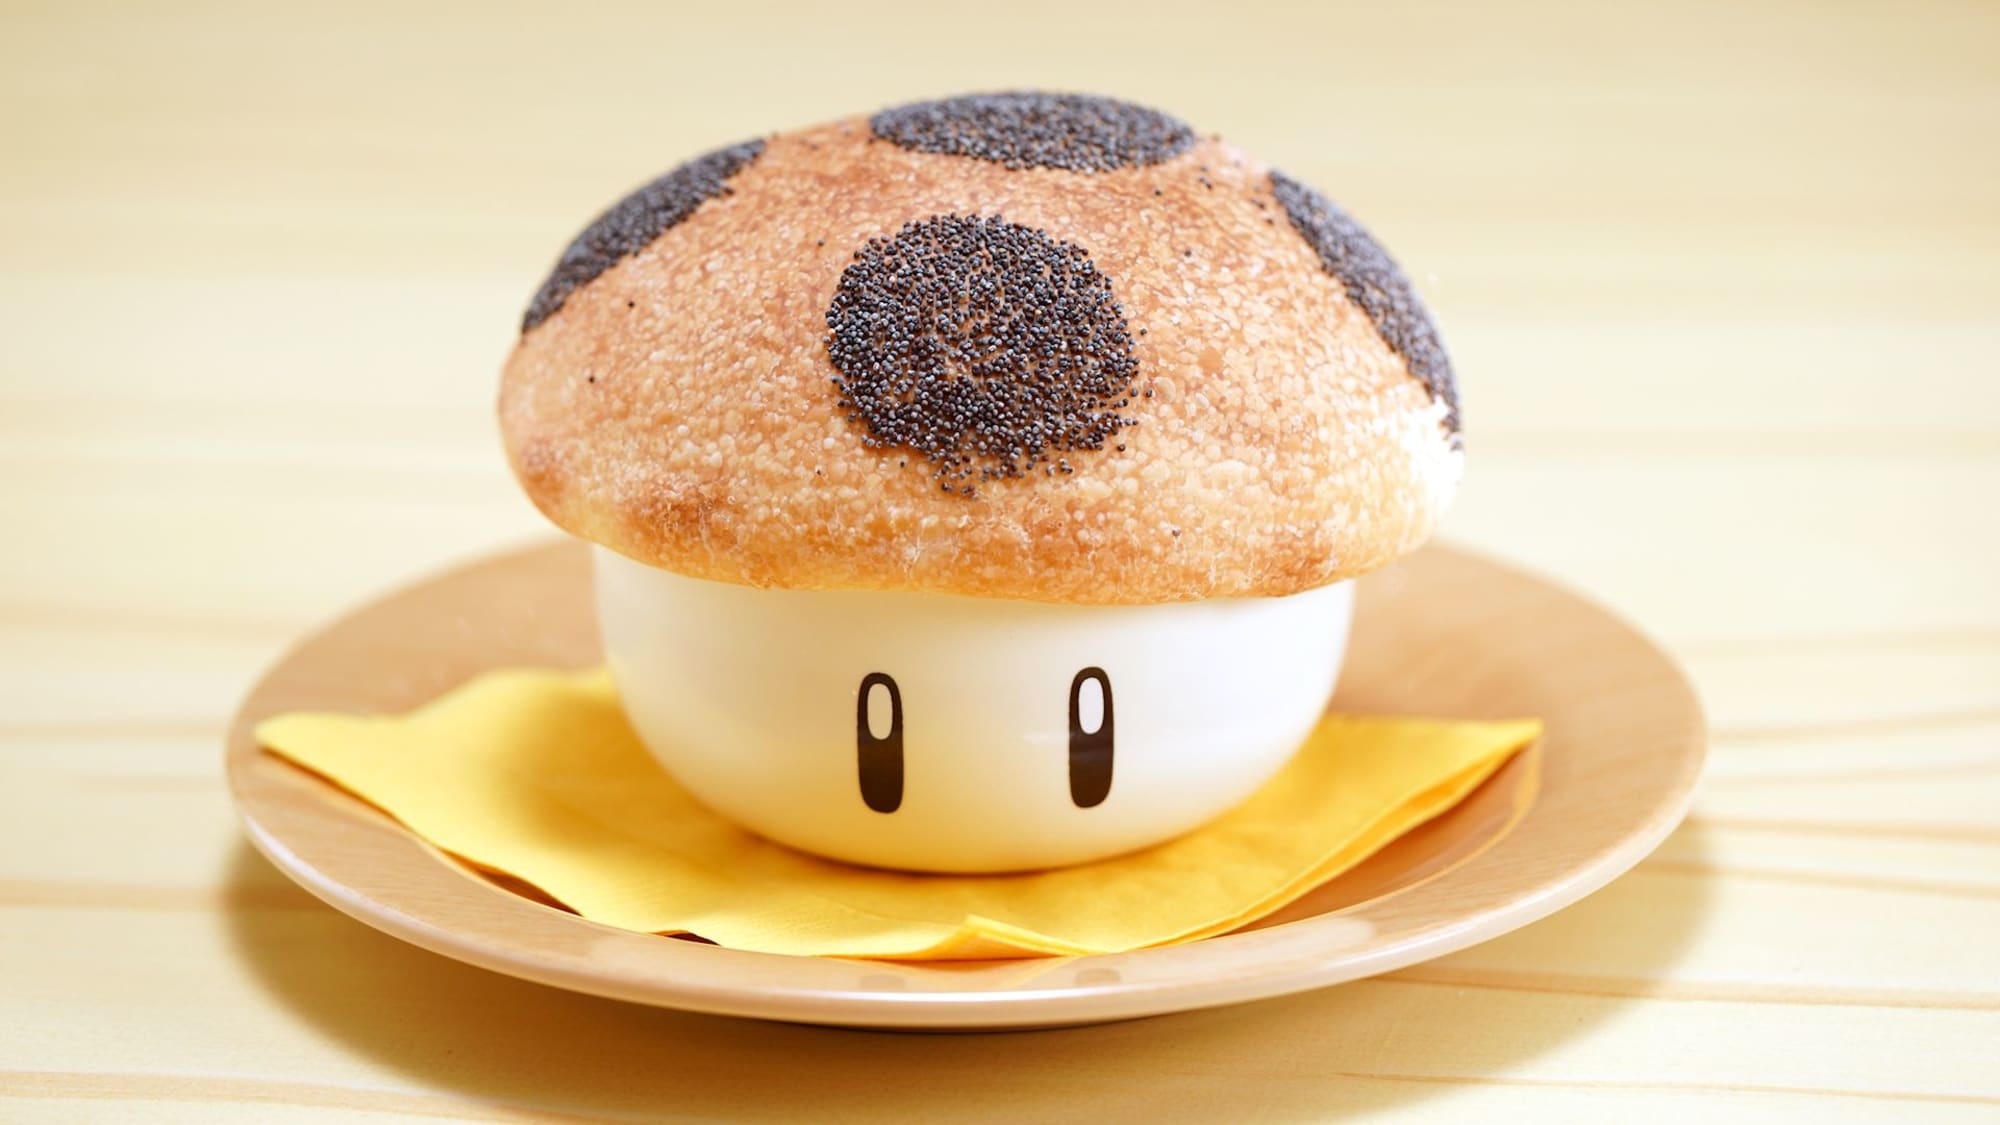 Inclinado sección saludo Super Nintendo World Kinopio's Café is a foodie fantasy world